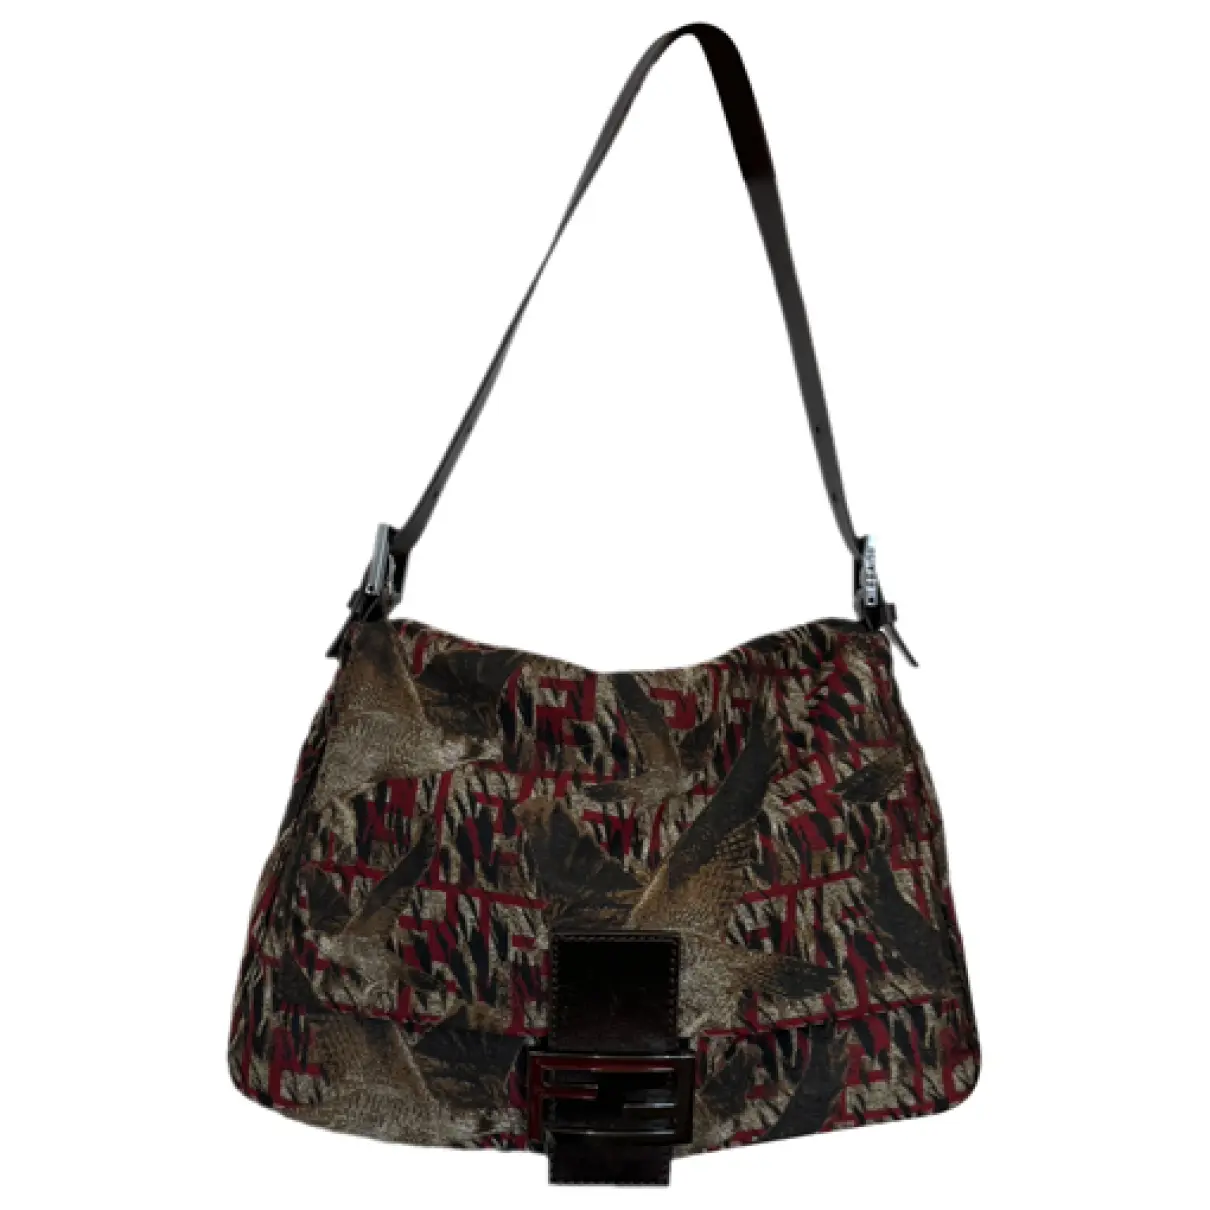 Mamma Baguette cloth handbag